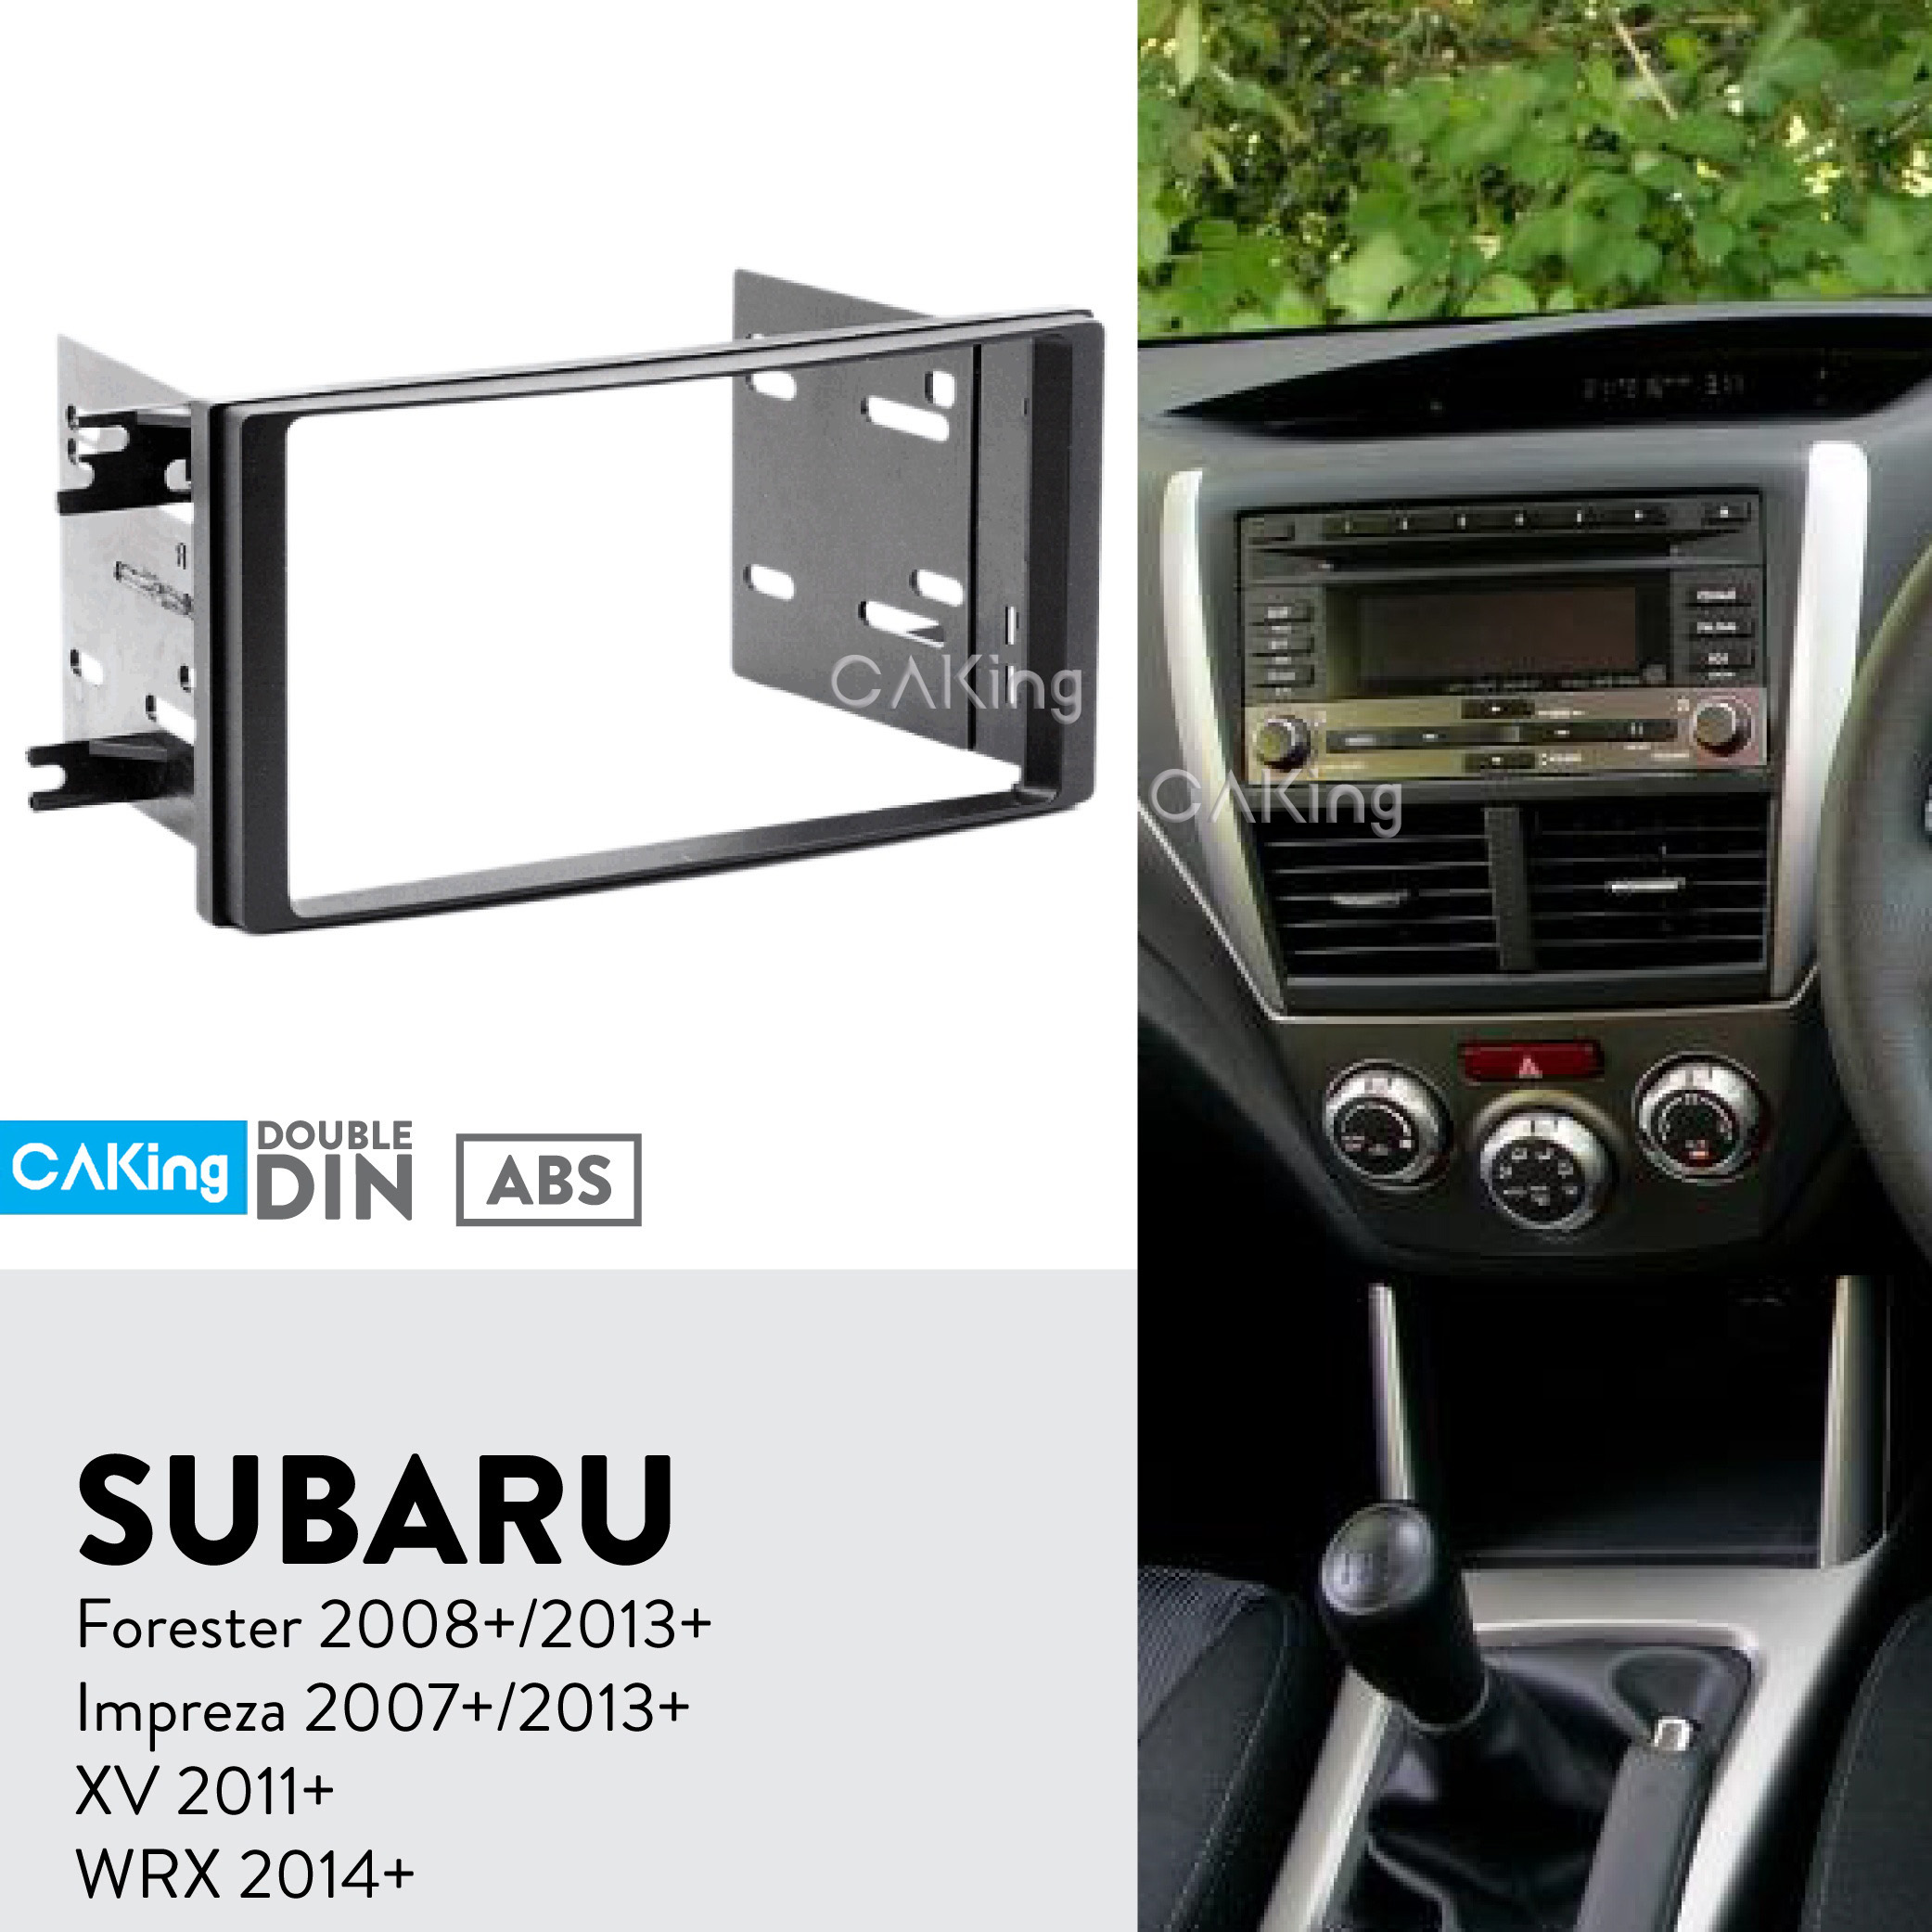 Subaru Impreza 2008 Silver Double DIN Facia Plate Autoleads Radio Stereo 